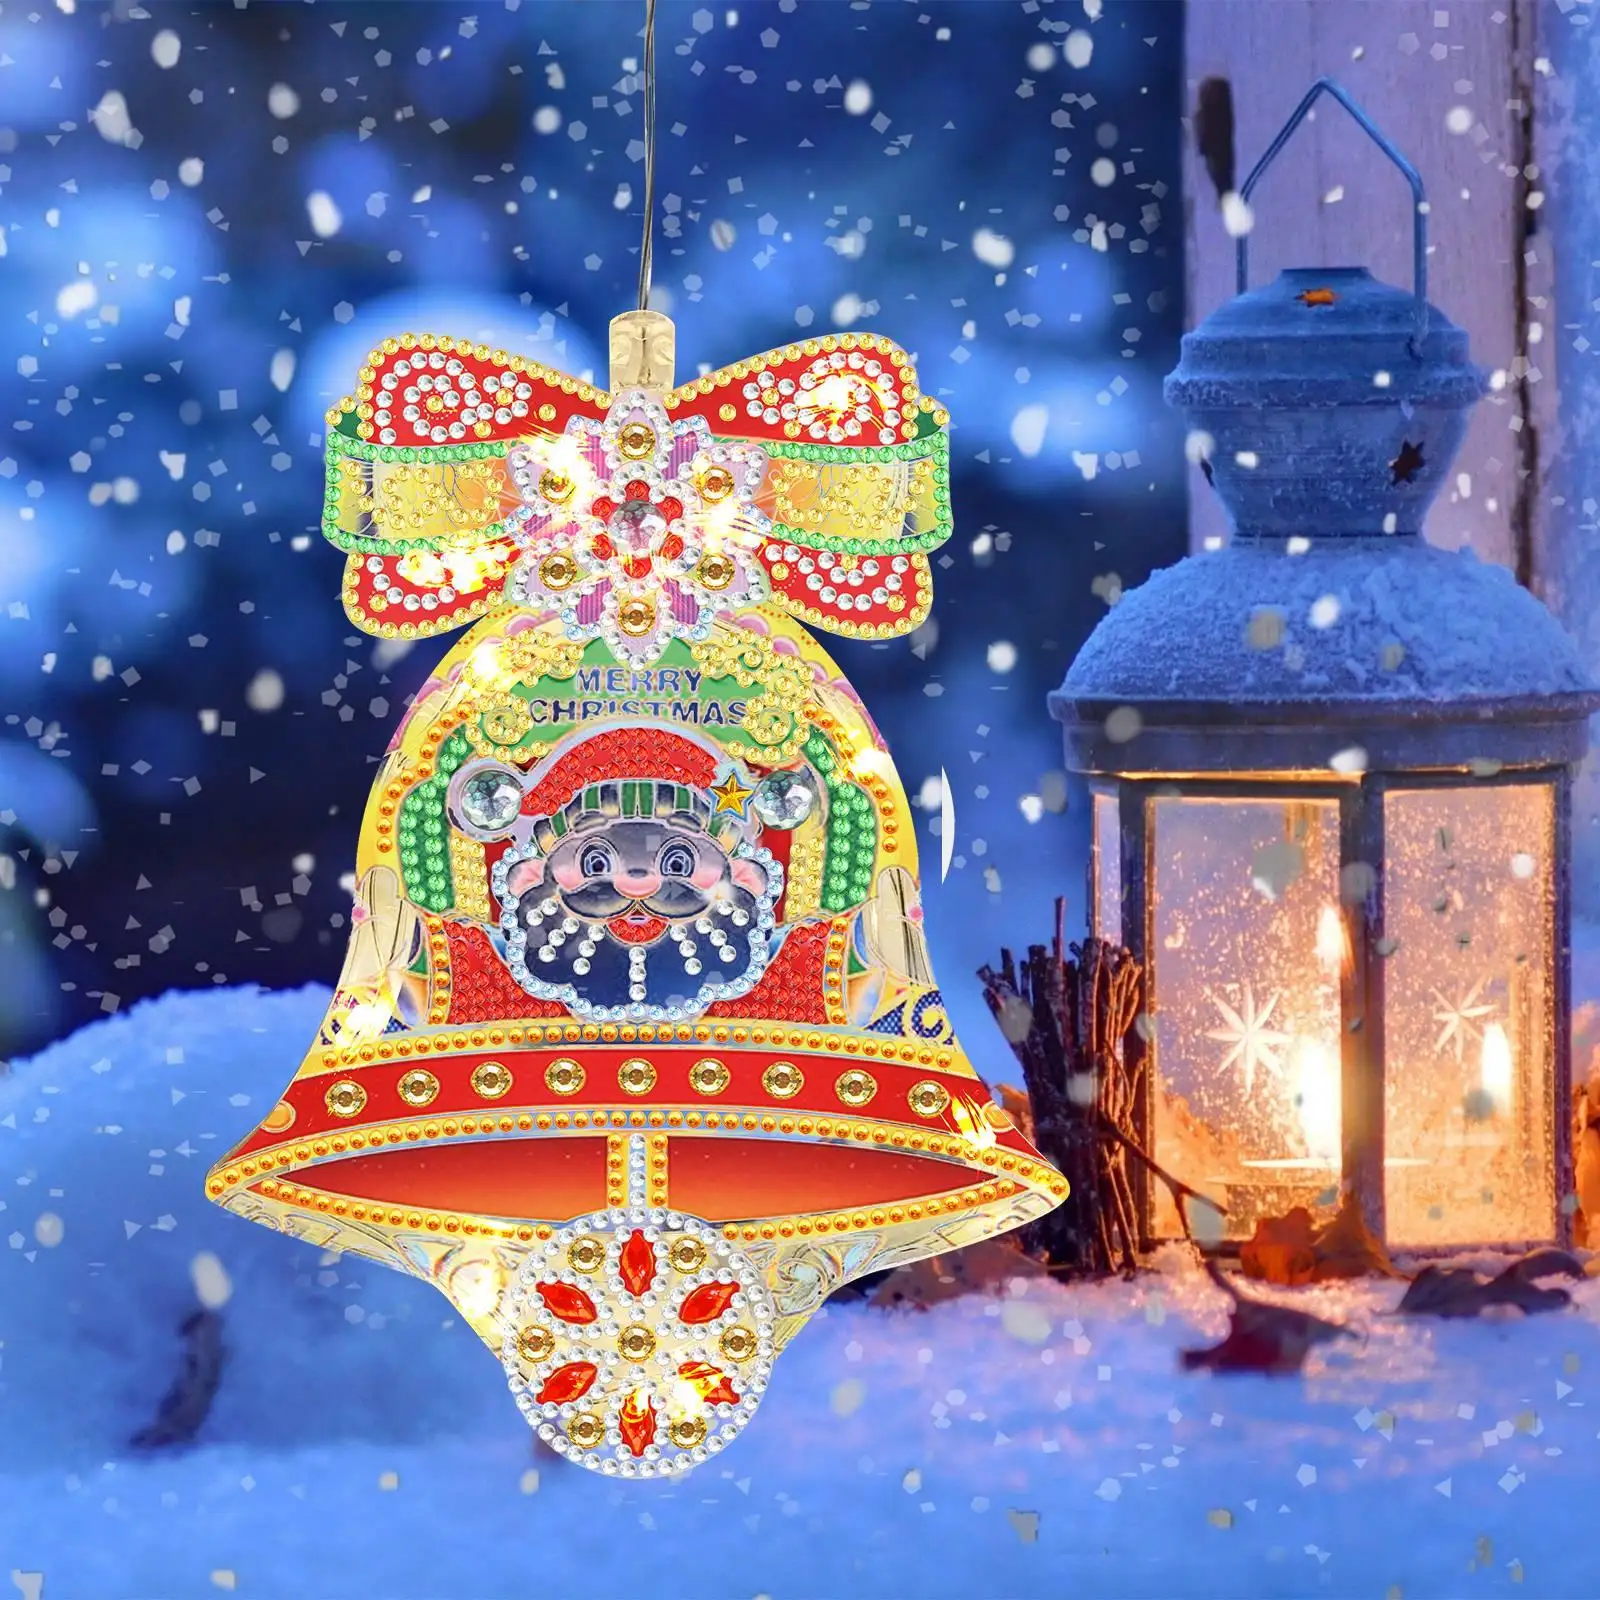 مصباح مصاصة بشكل يدوي من مادة البولي فينيل كلورايد بلوحة ماسية للكريسماس مصباح مصاصة نافذة مثقاب كامل 5d مصباح LED